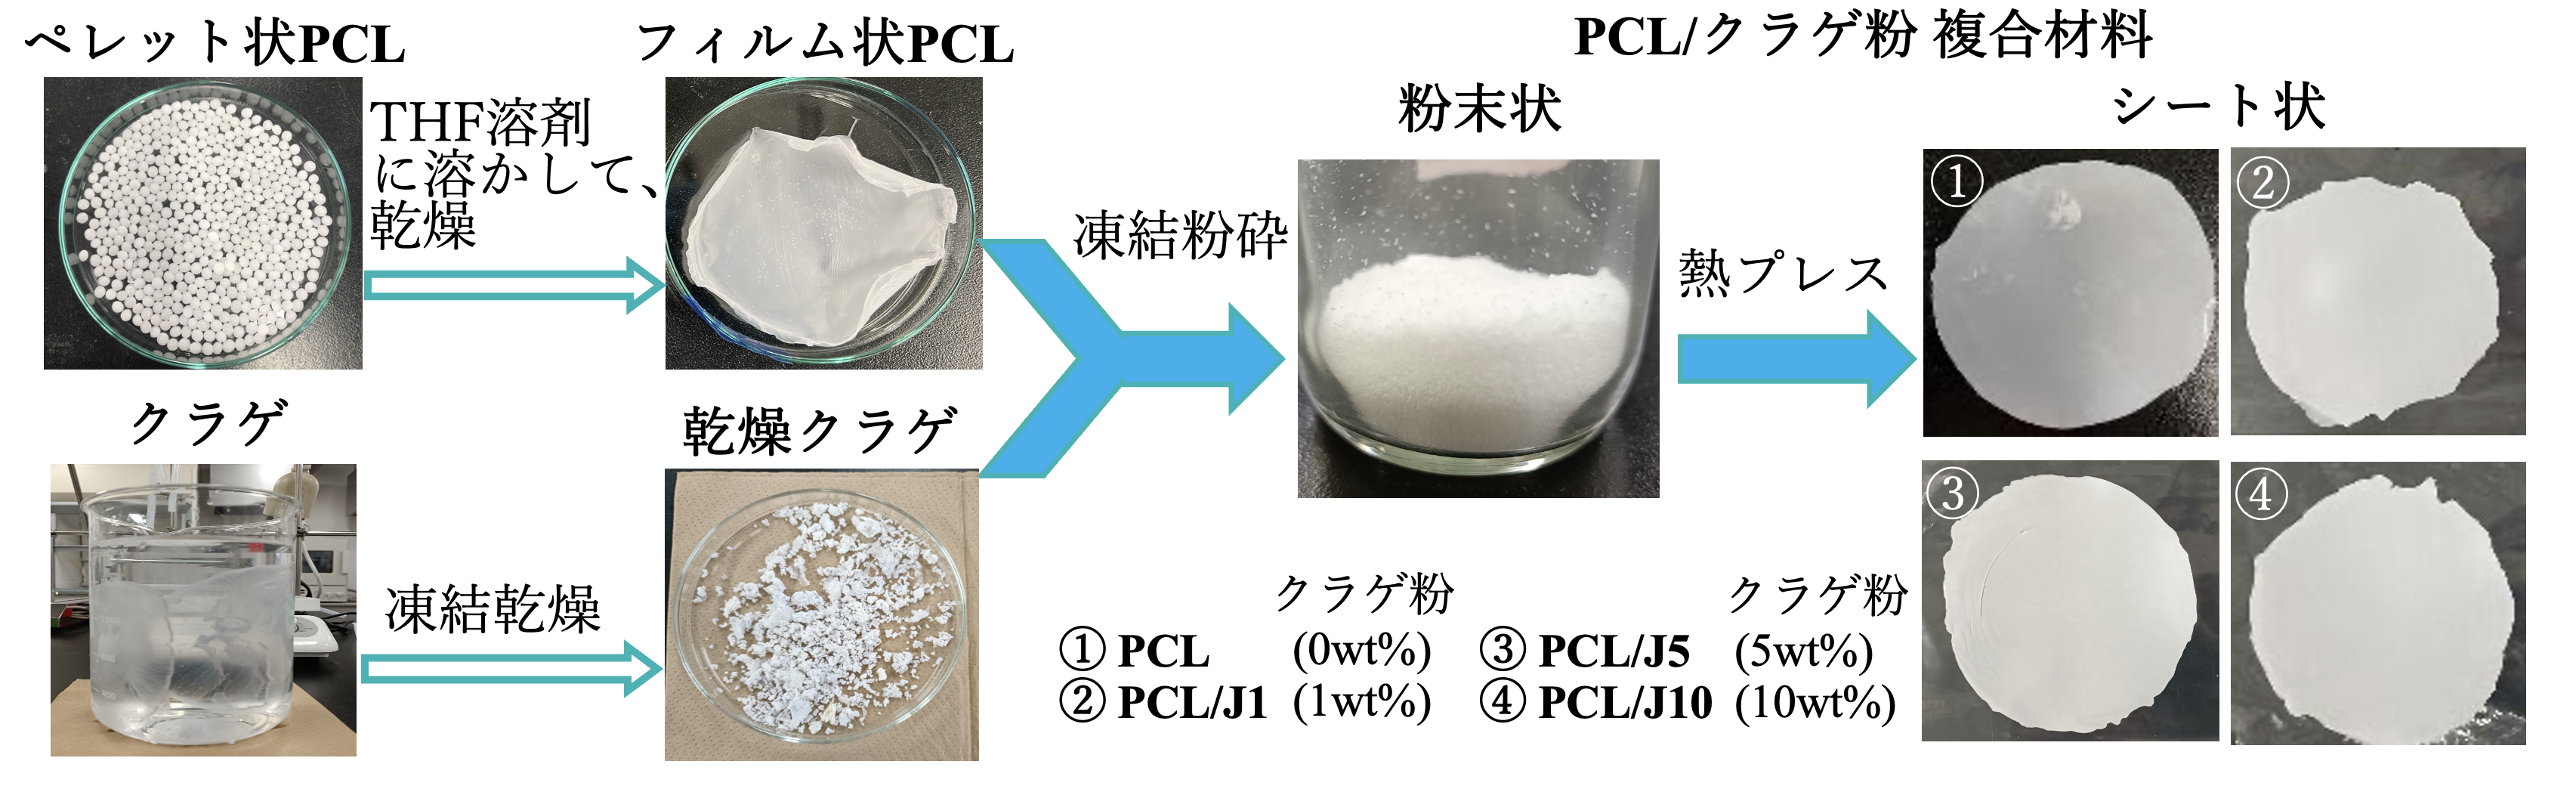 図1 クラゲ由来のタンパク質を活用したPCL/クラゲ粉複合材料の作製方法と手順